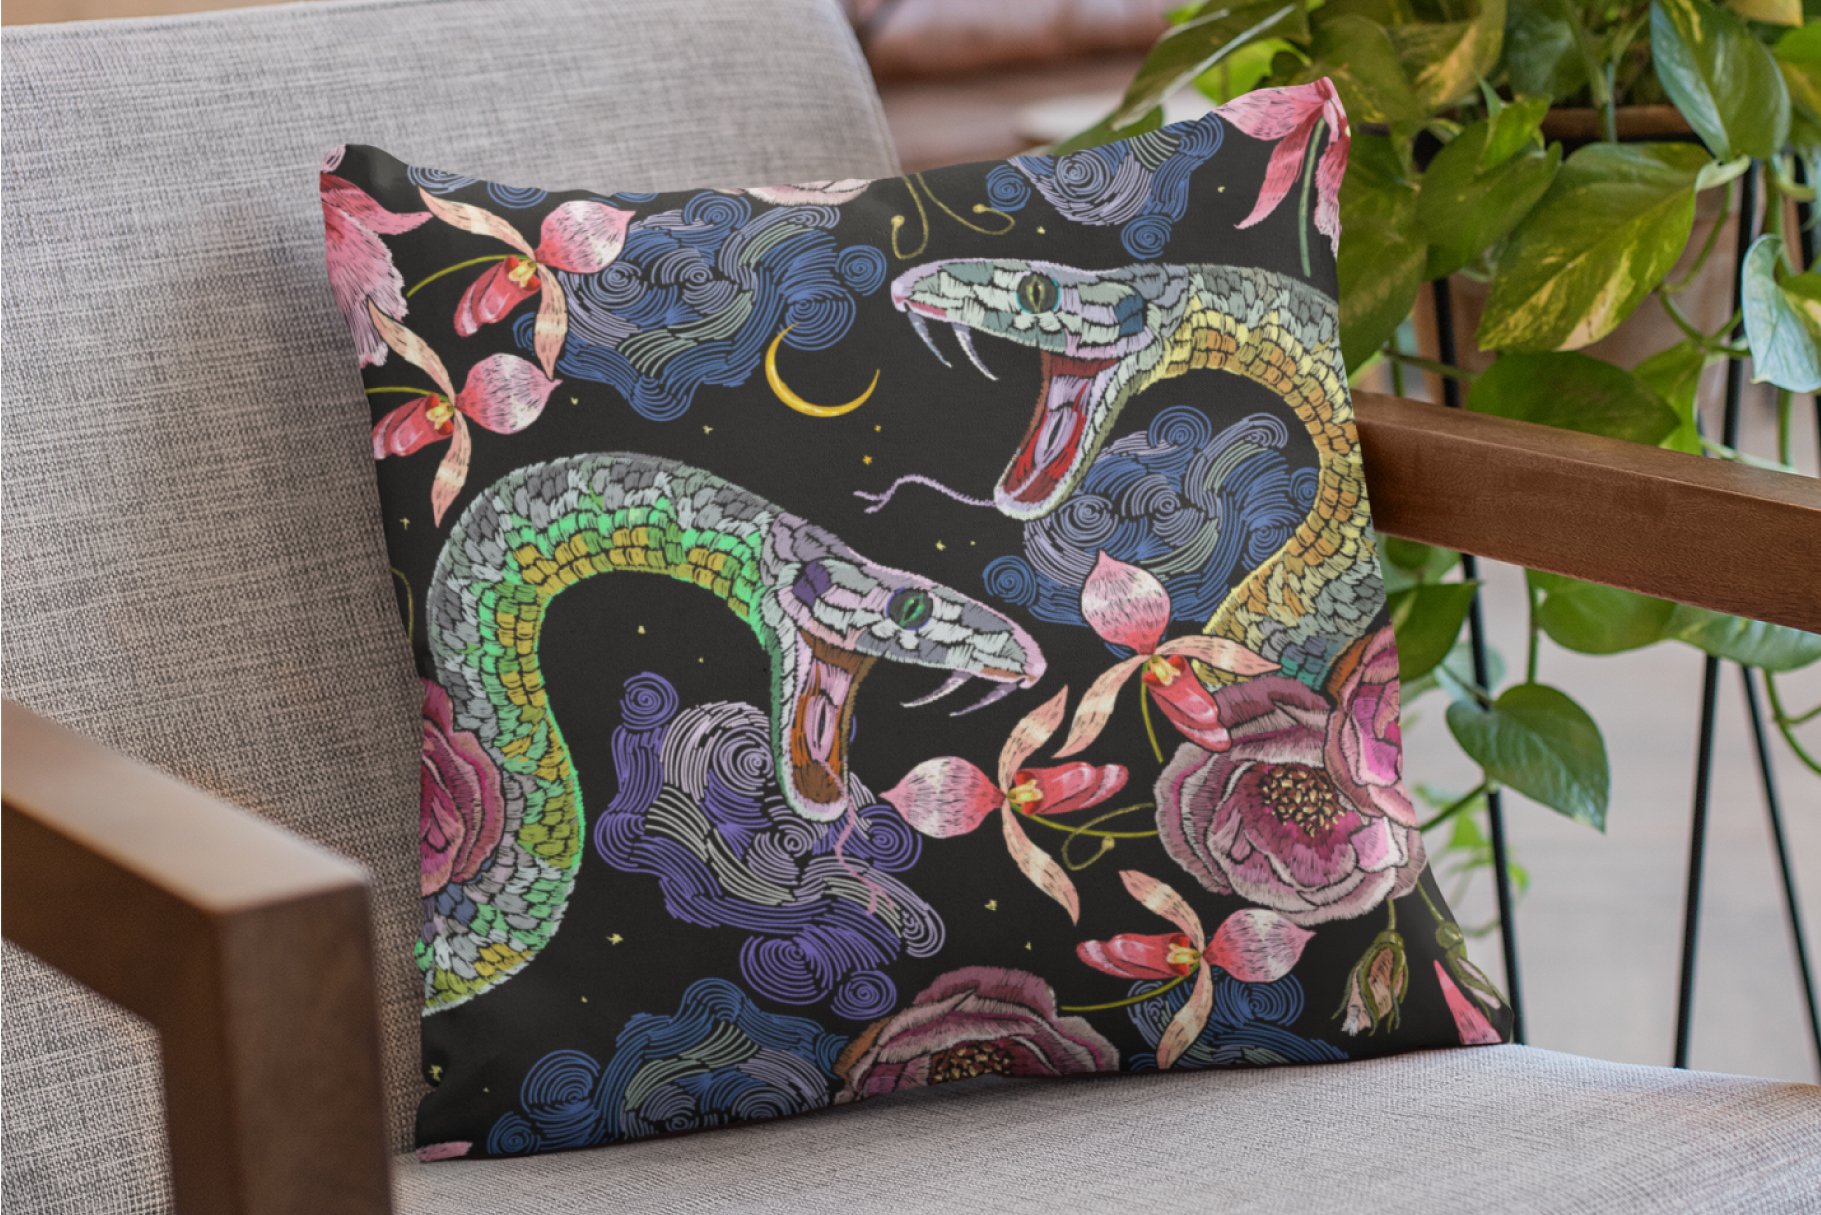 Matte snake illustration on a pillow.